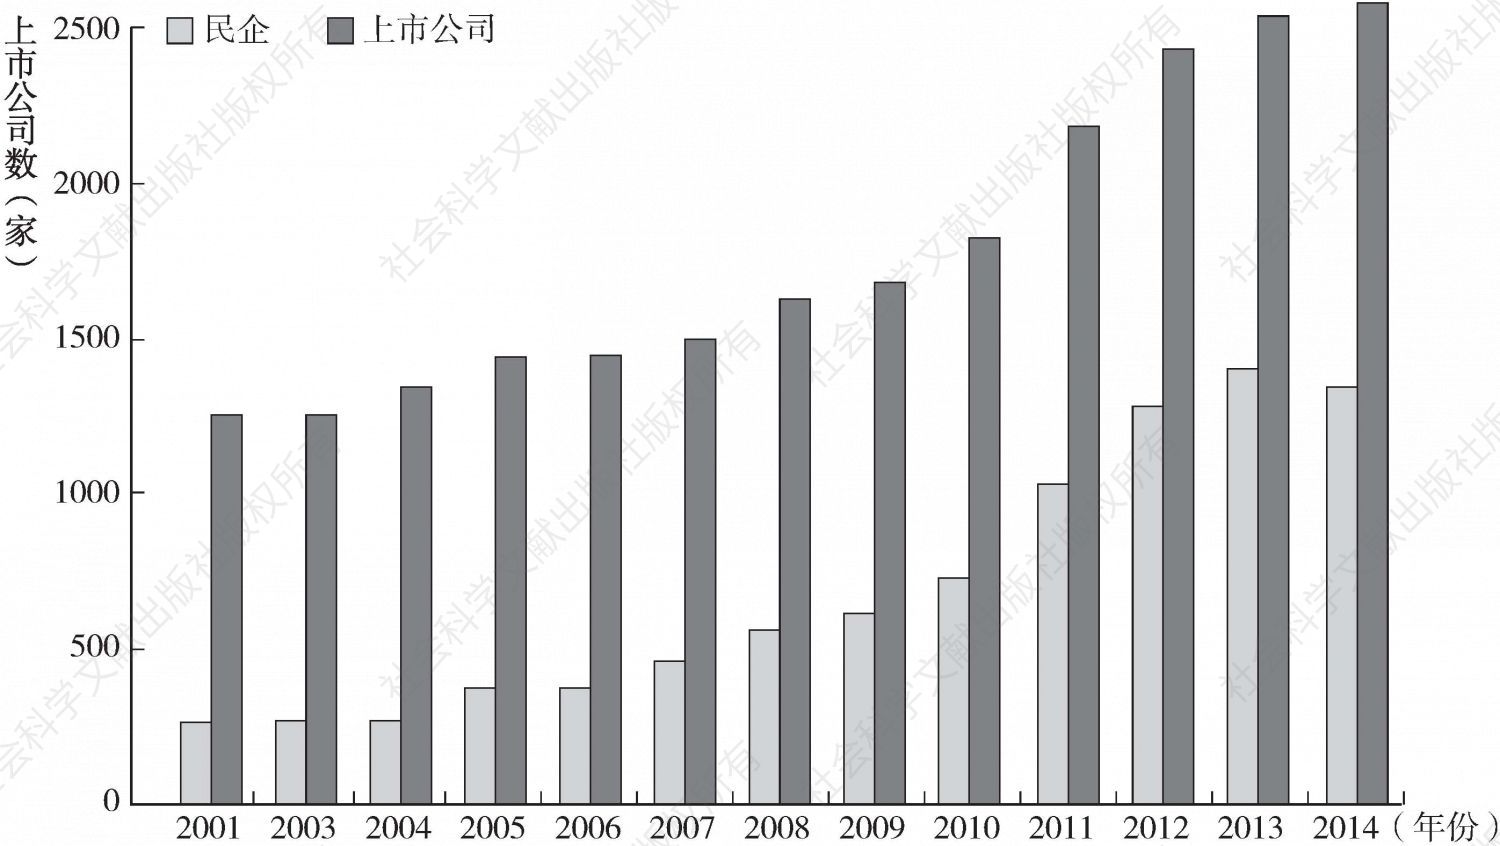 图2-4 中国沪深两市上市公司总数与民营企业上市公司数量年度分布